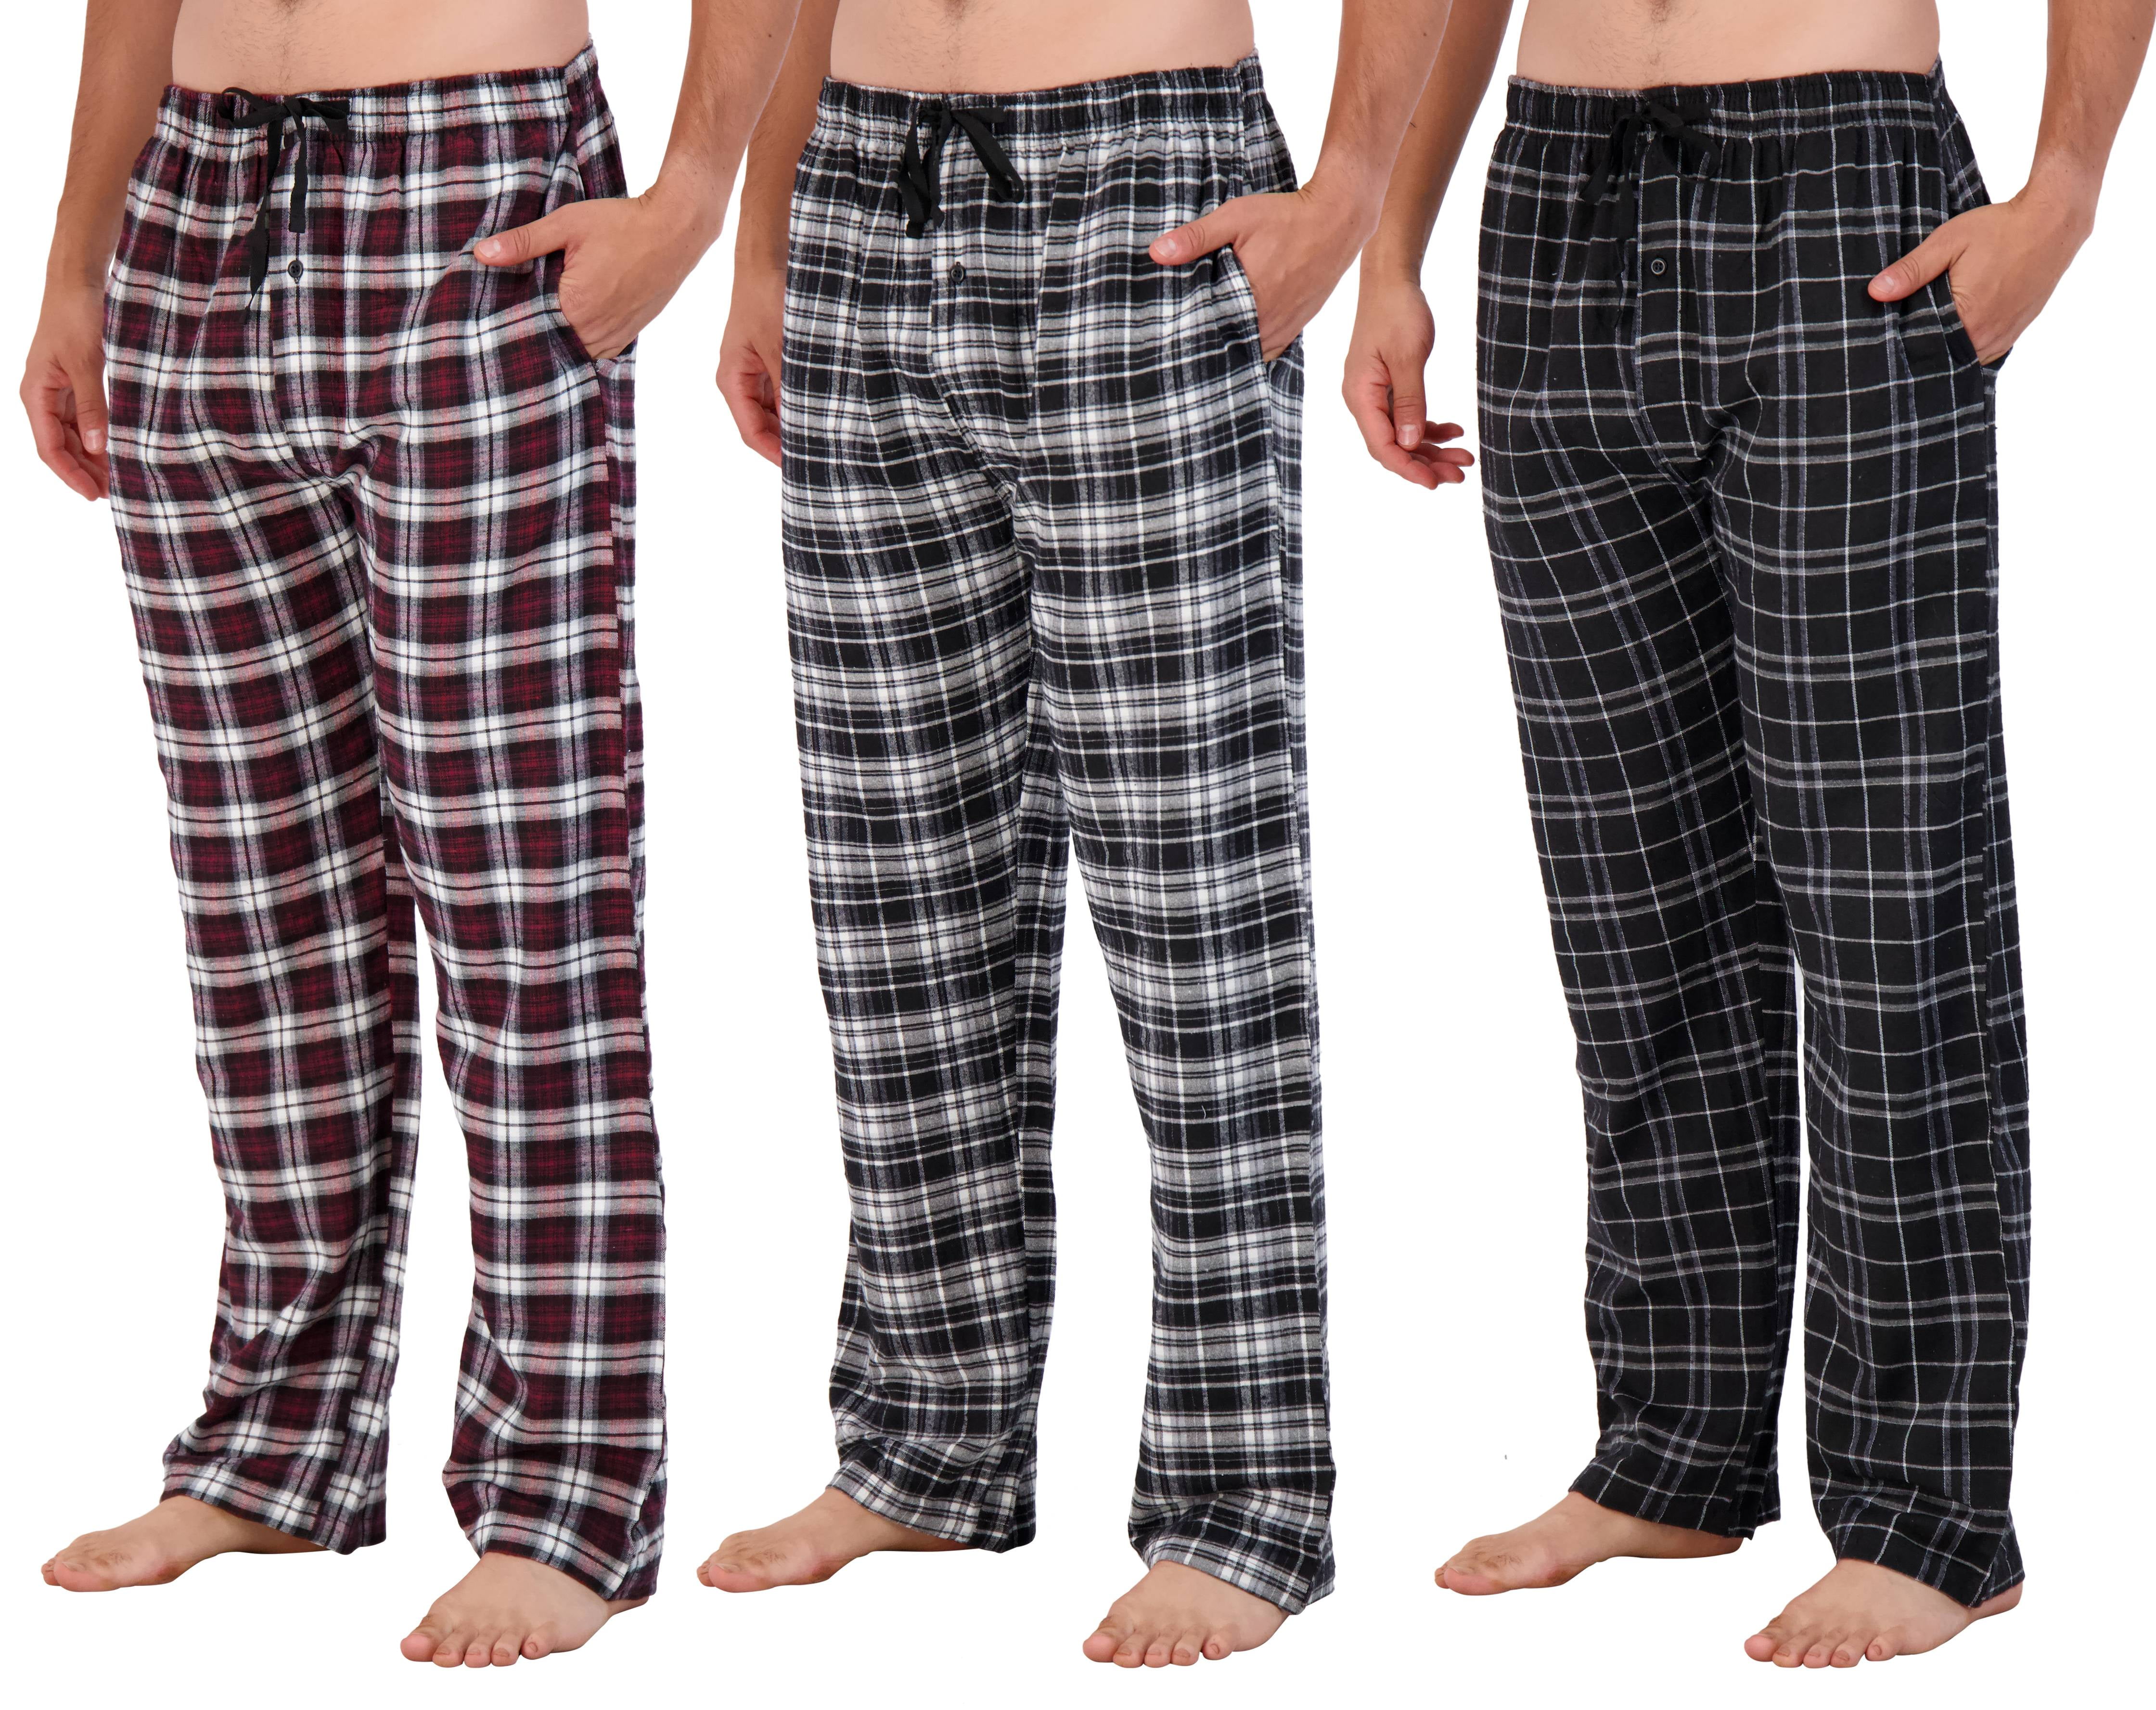 Mens Knit Cotton Flannel Plaid Lounge Bottoms S-3XL Mens Pajama Pants 3 Pack 